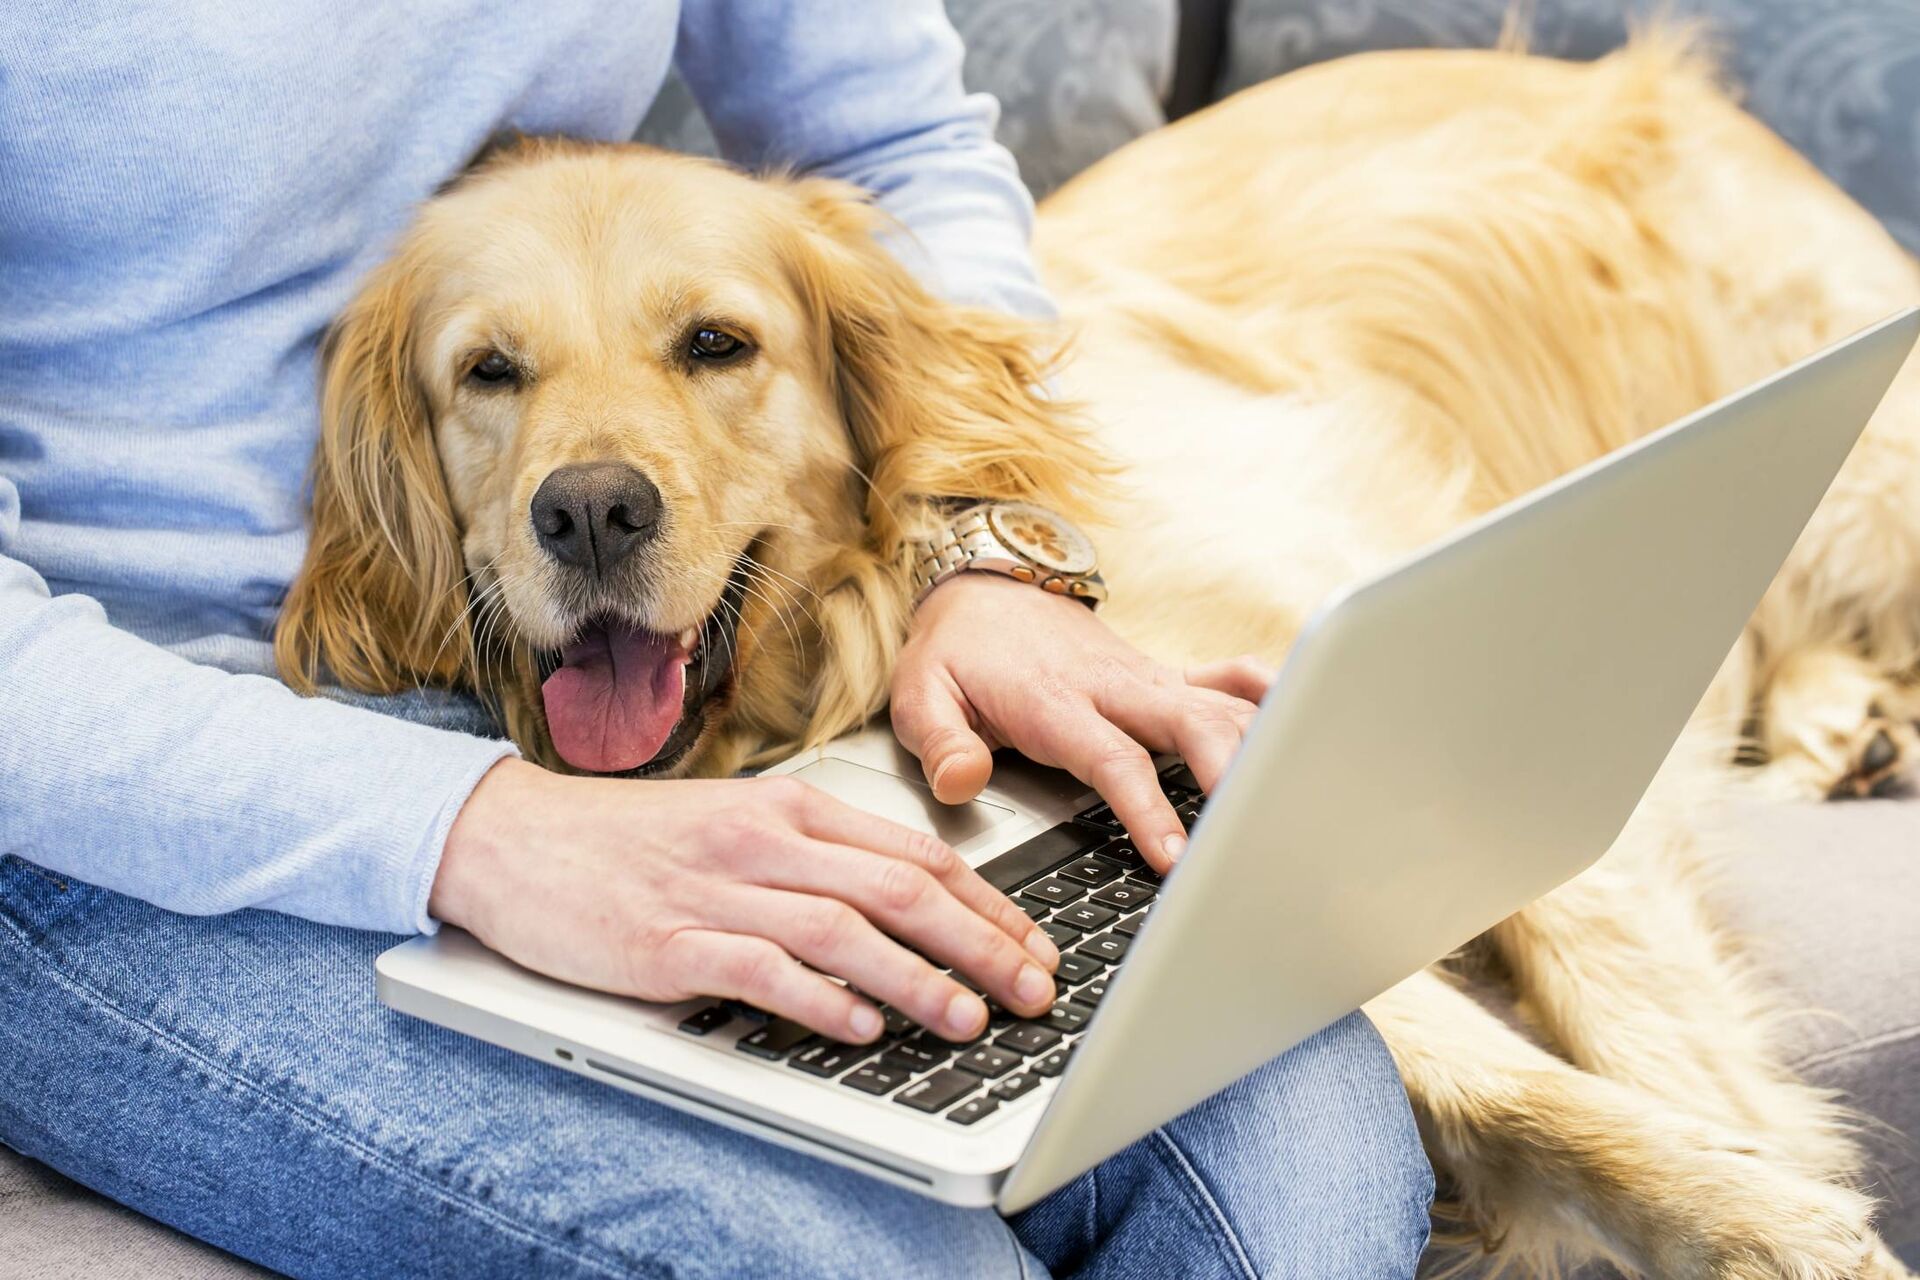 Ein Hund liegt angelehnt an den Oberschenkeln seiner Halterin und sie arbeitet auf dem Laptop.